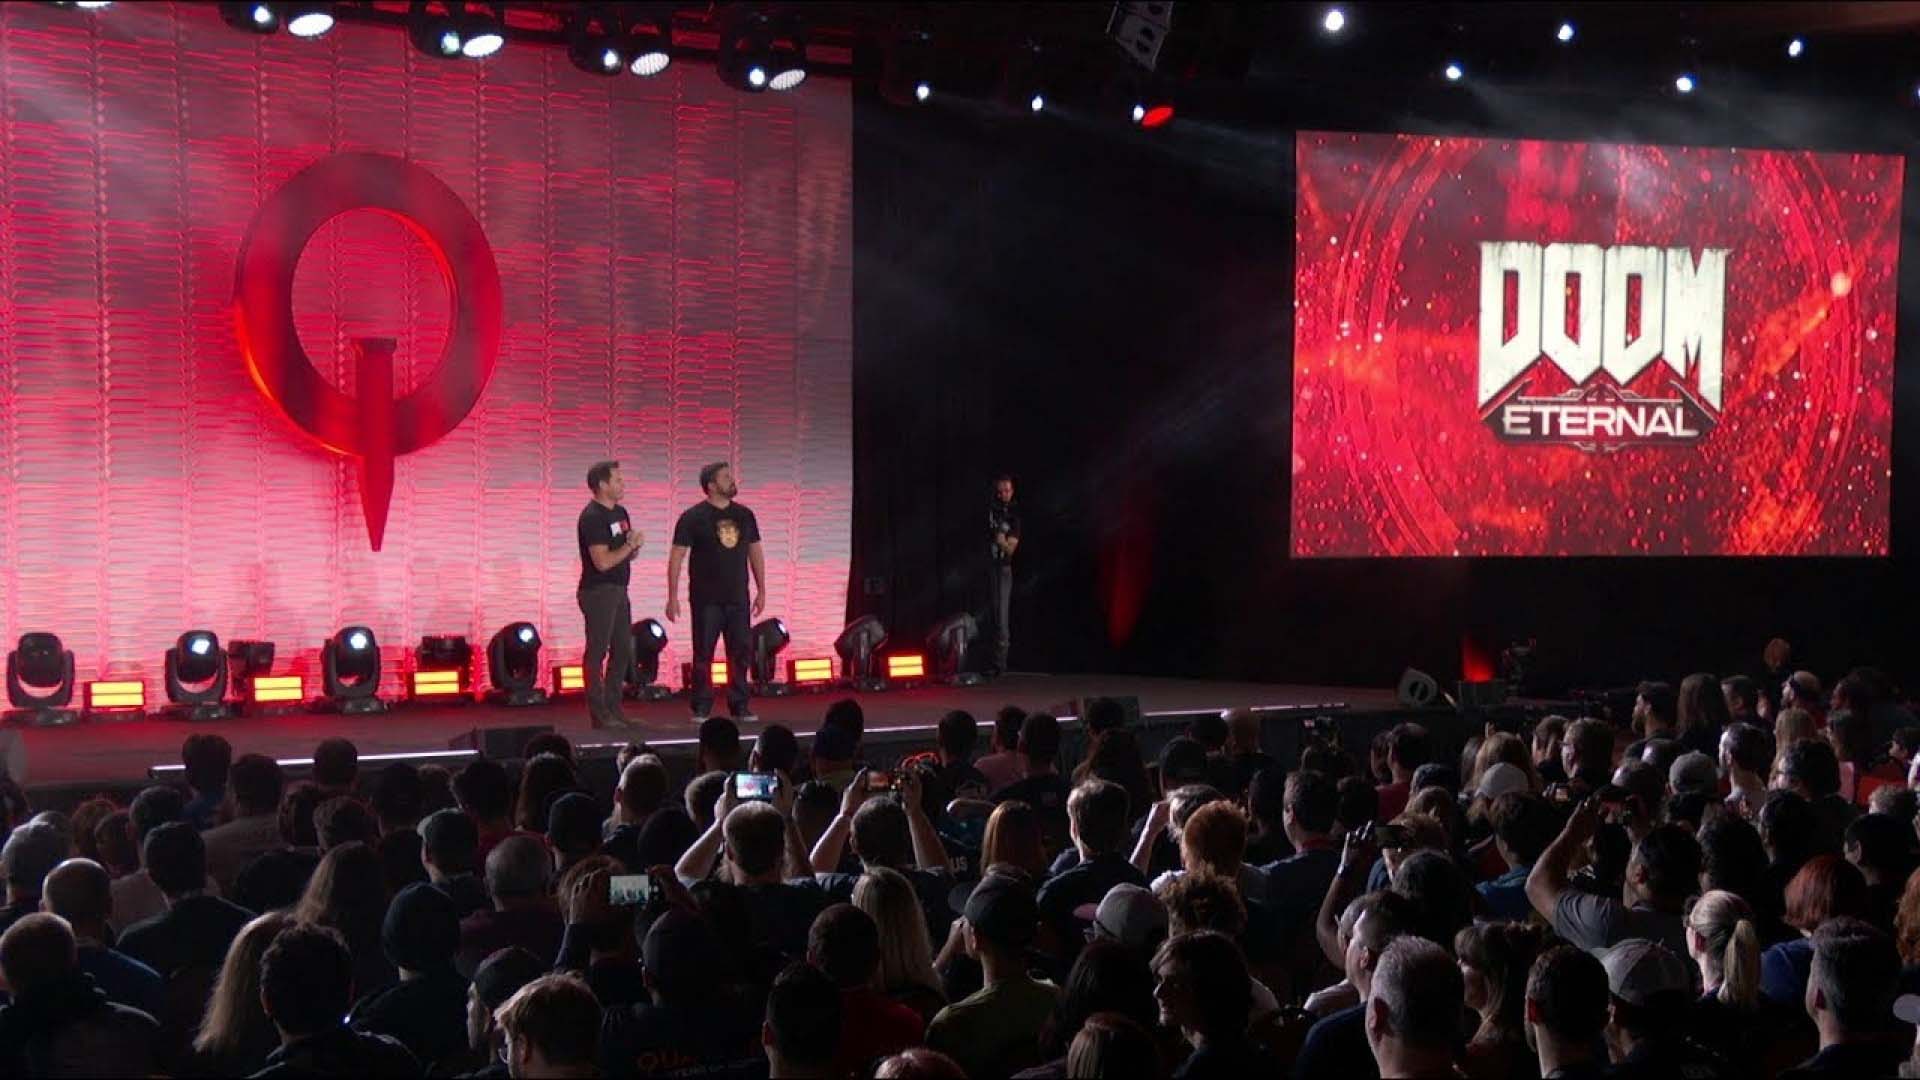 همایش QuakeCon 2020 به علت شروع ویروس کرونا کنسل شد